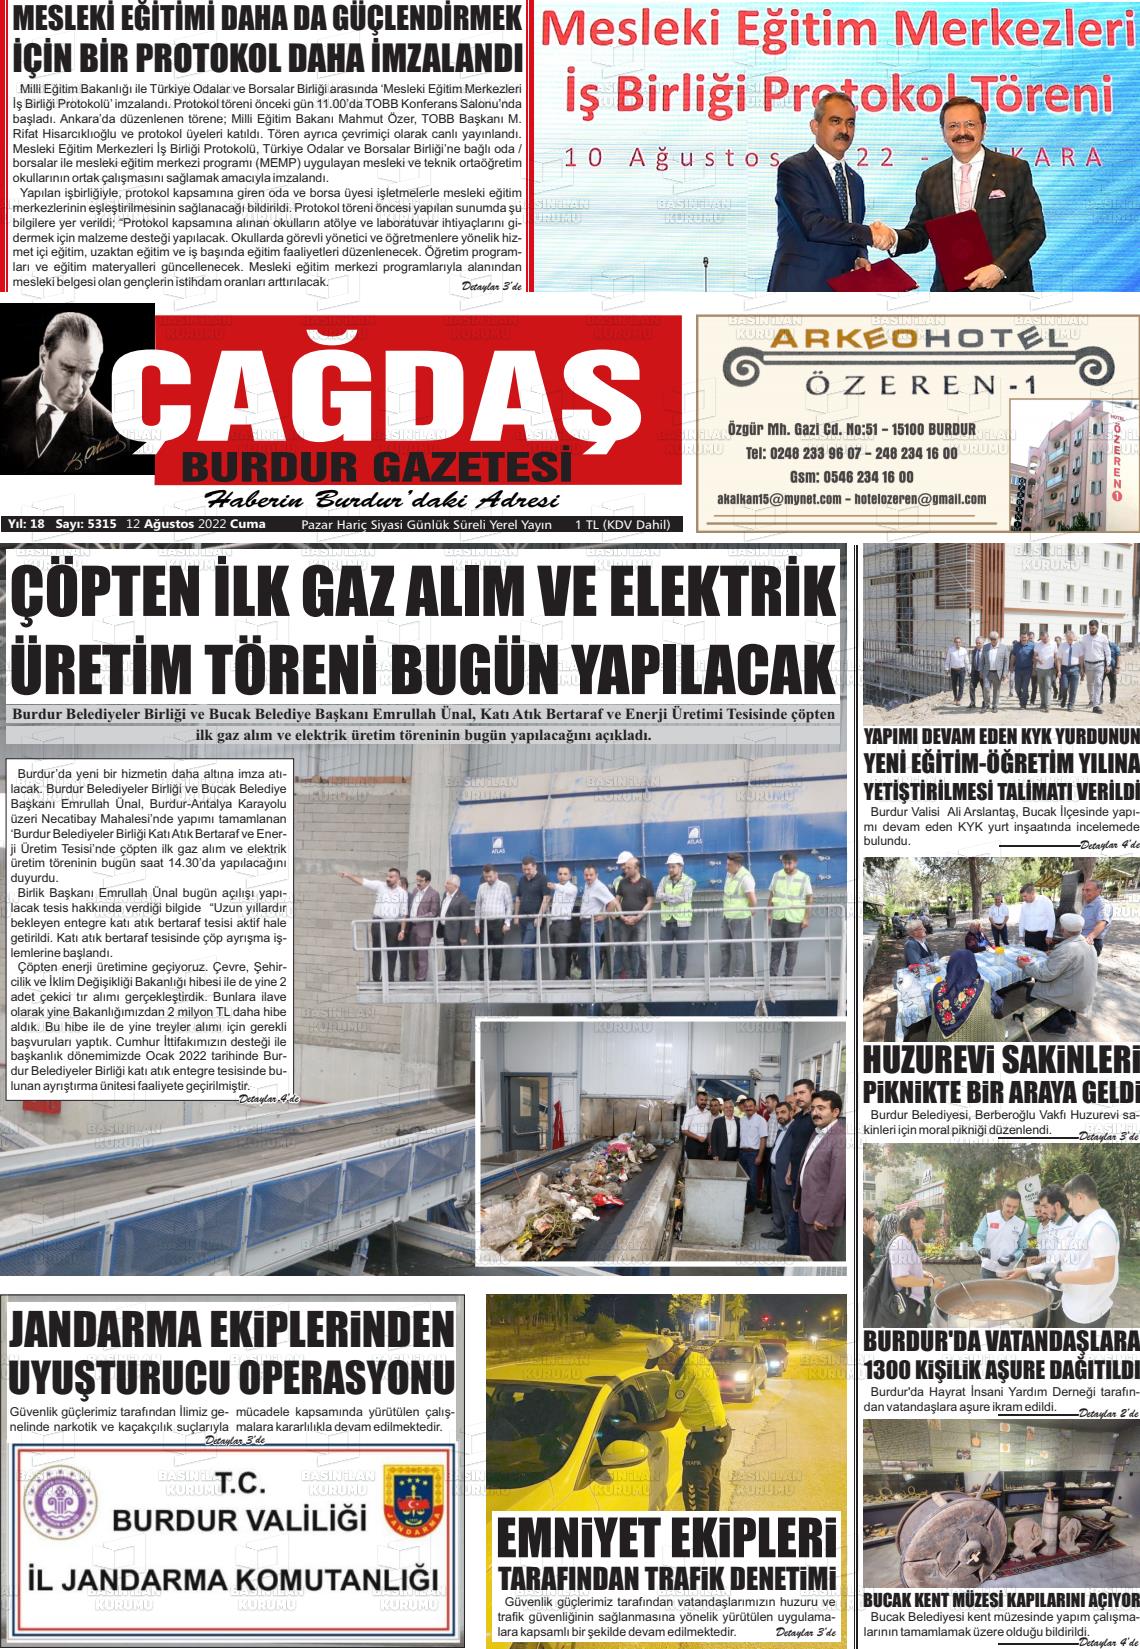 12 Ağustos 2022 Çağdaş Burdur Gazete Manşeti